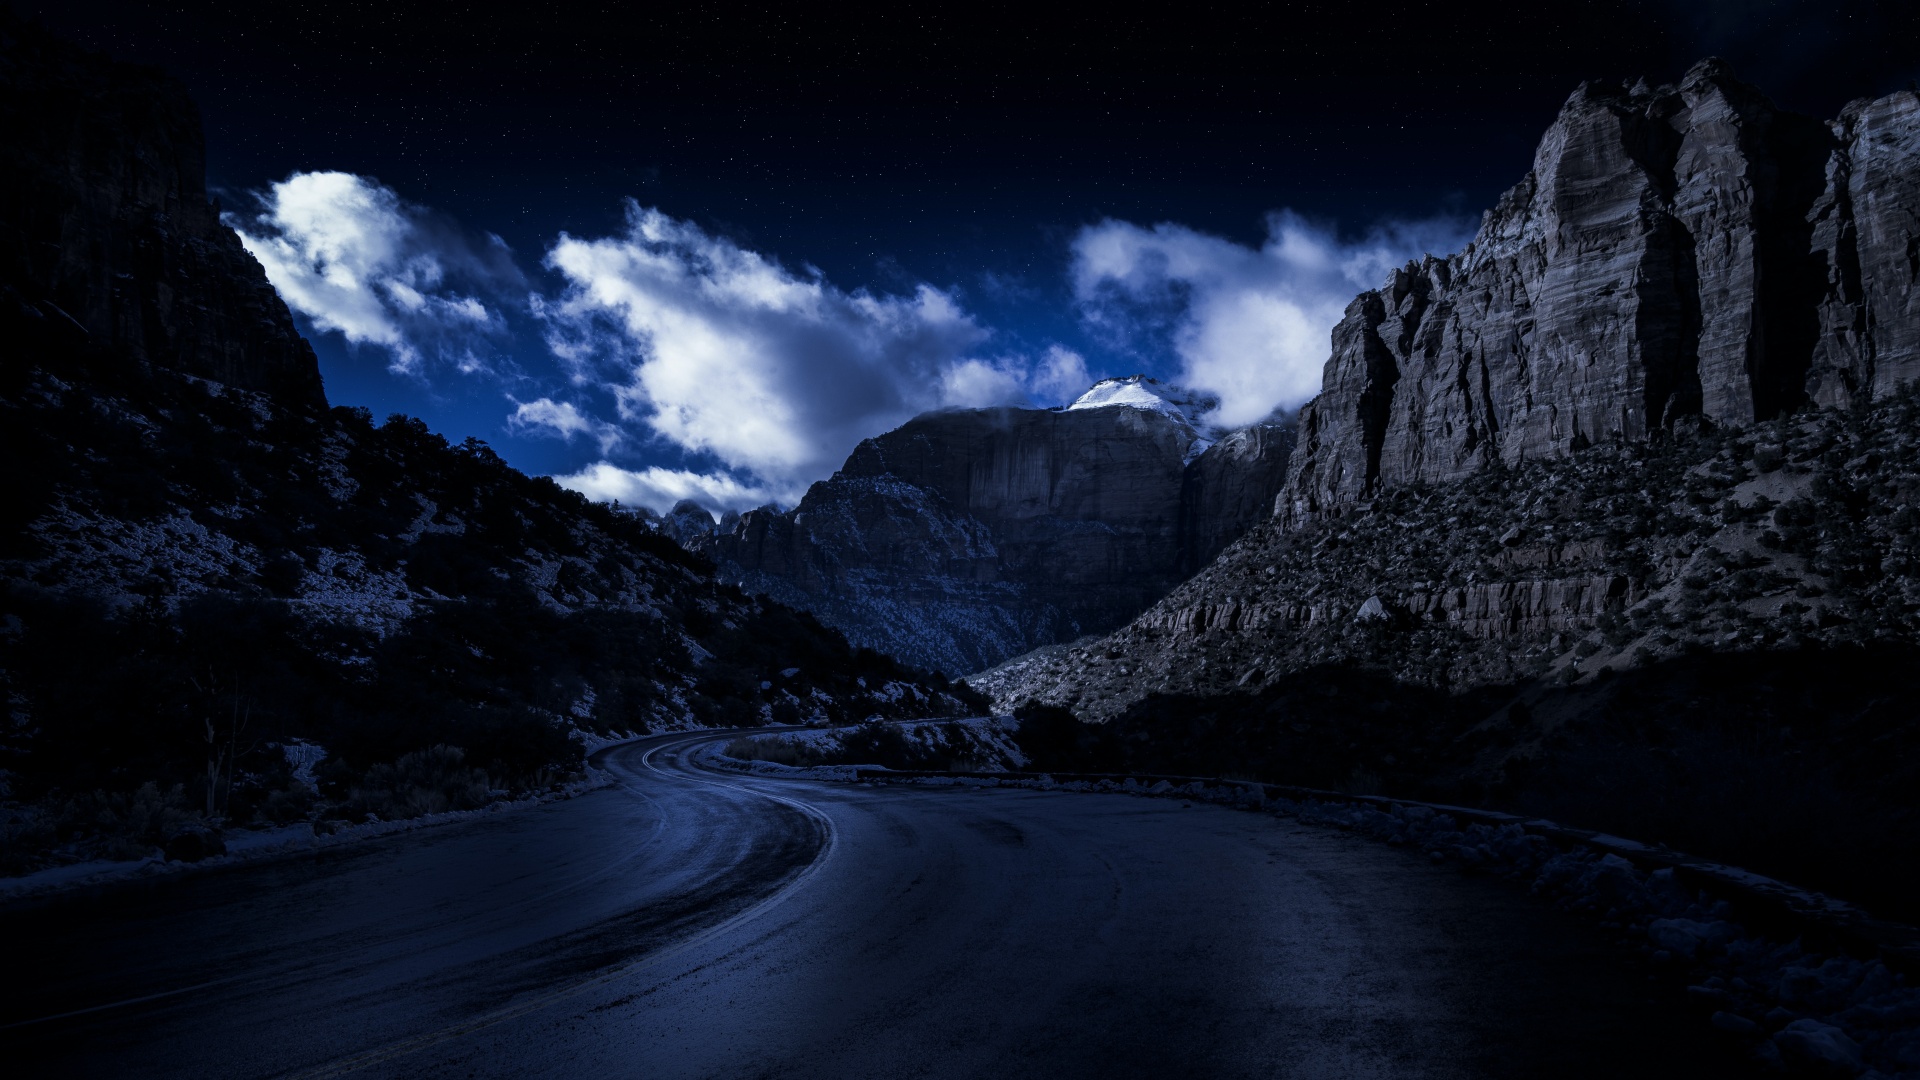 Zion National Park 4K Wallpaper, Road, Night, Rocks, Dark, 5K, 8K